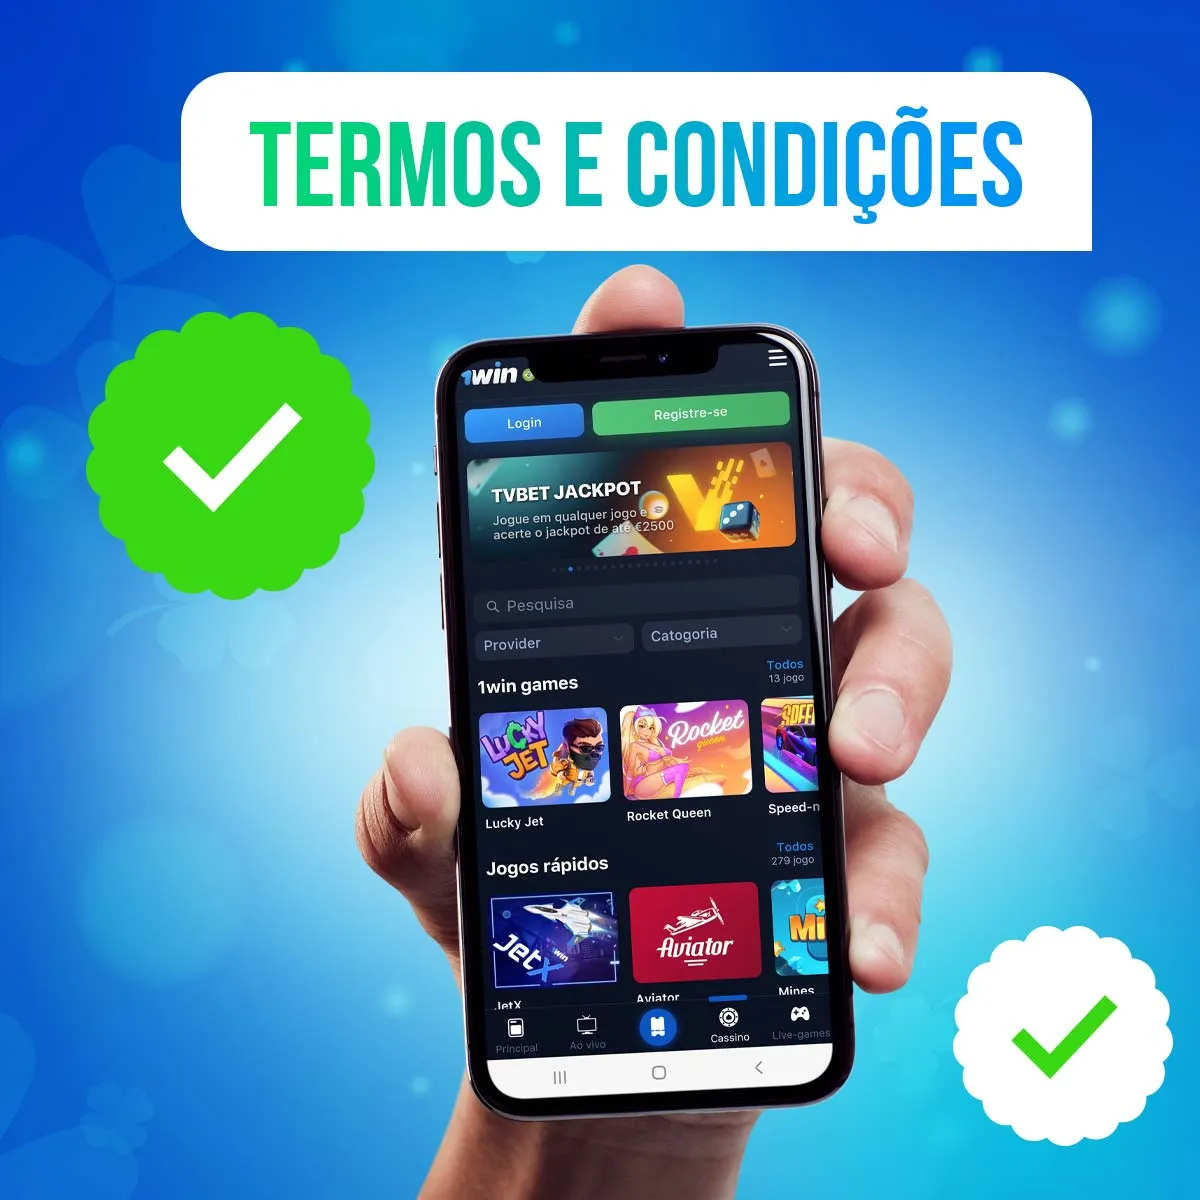 Termos e condições aplicativo do 1win Casino no Brasil